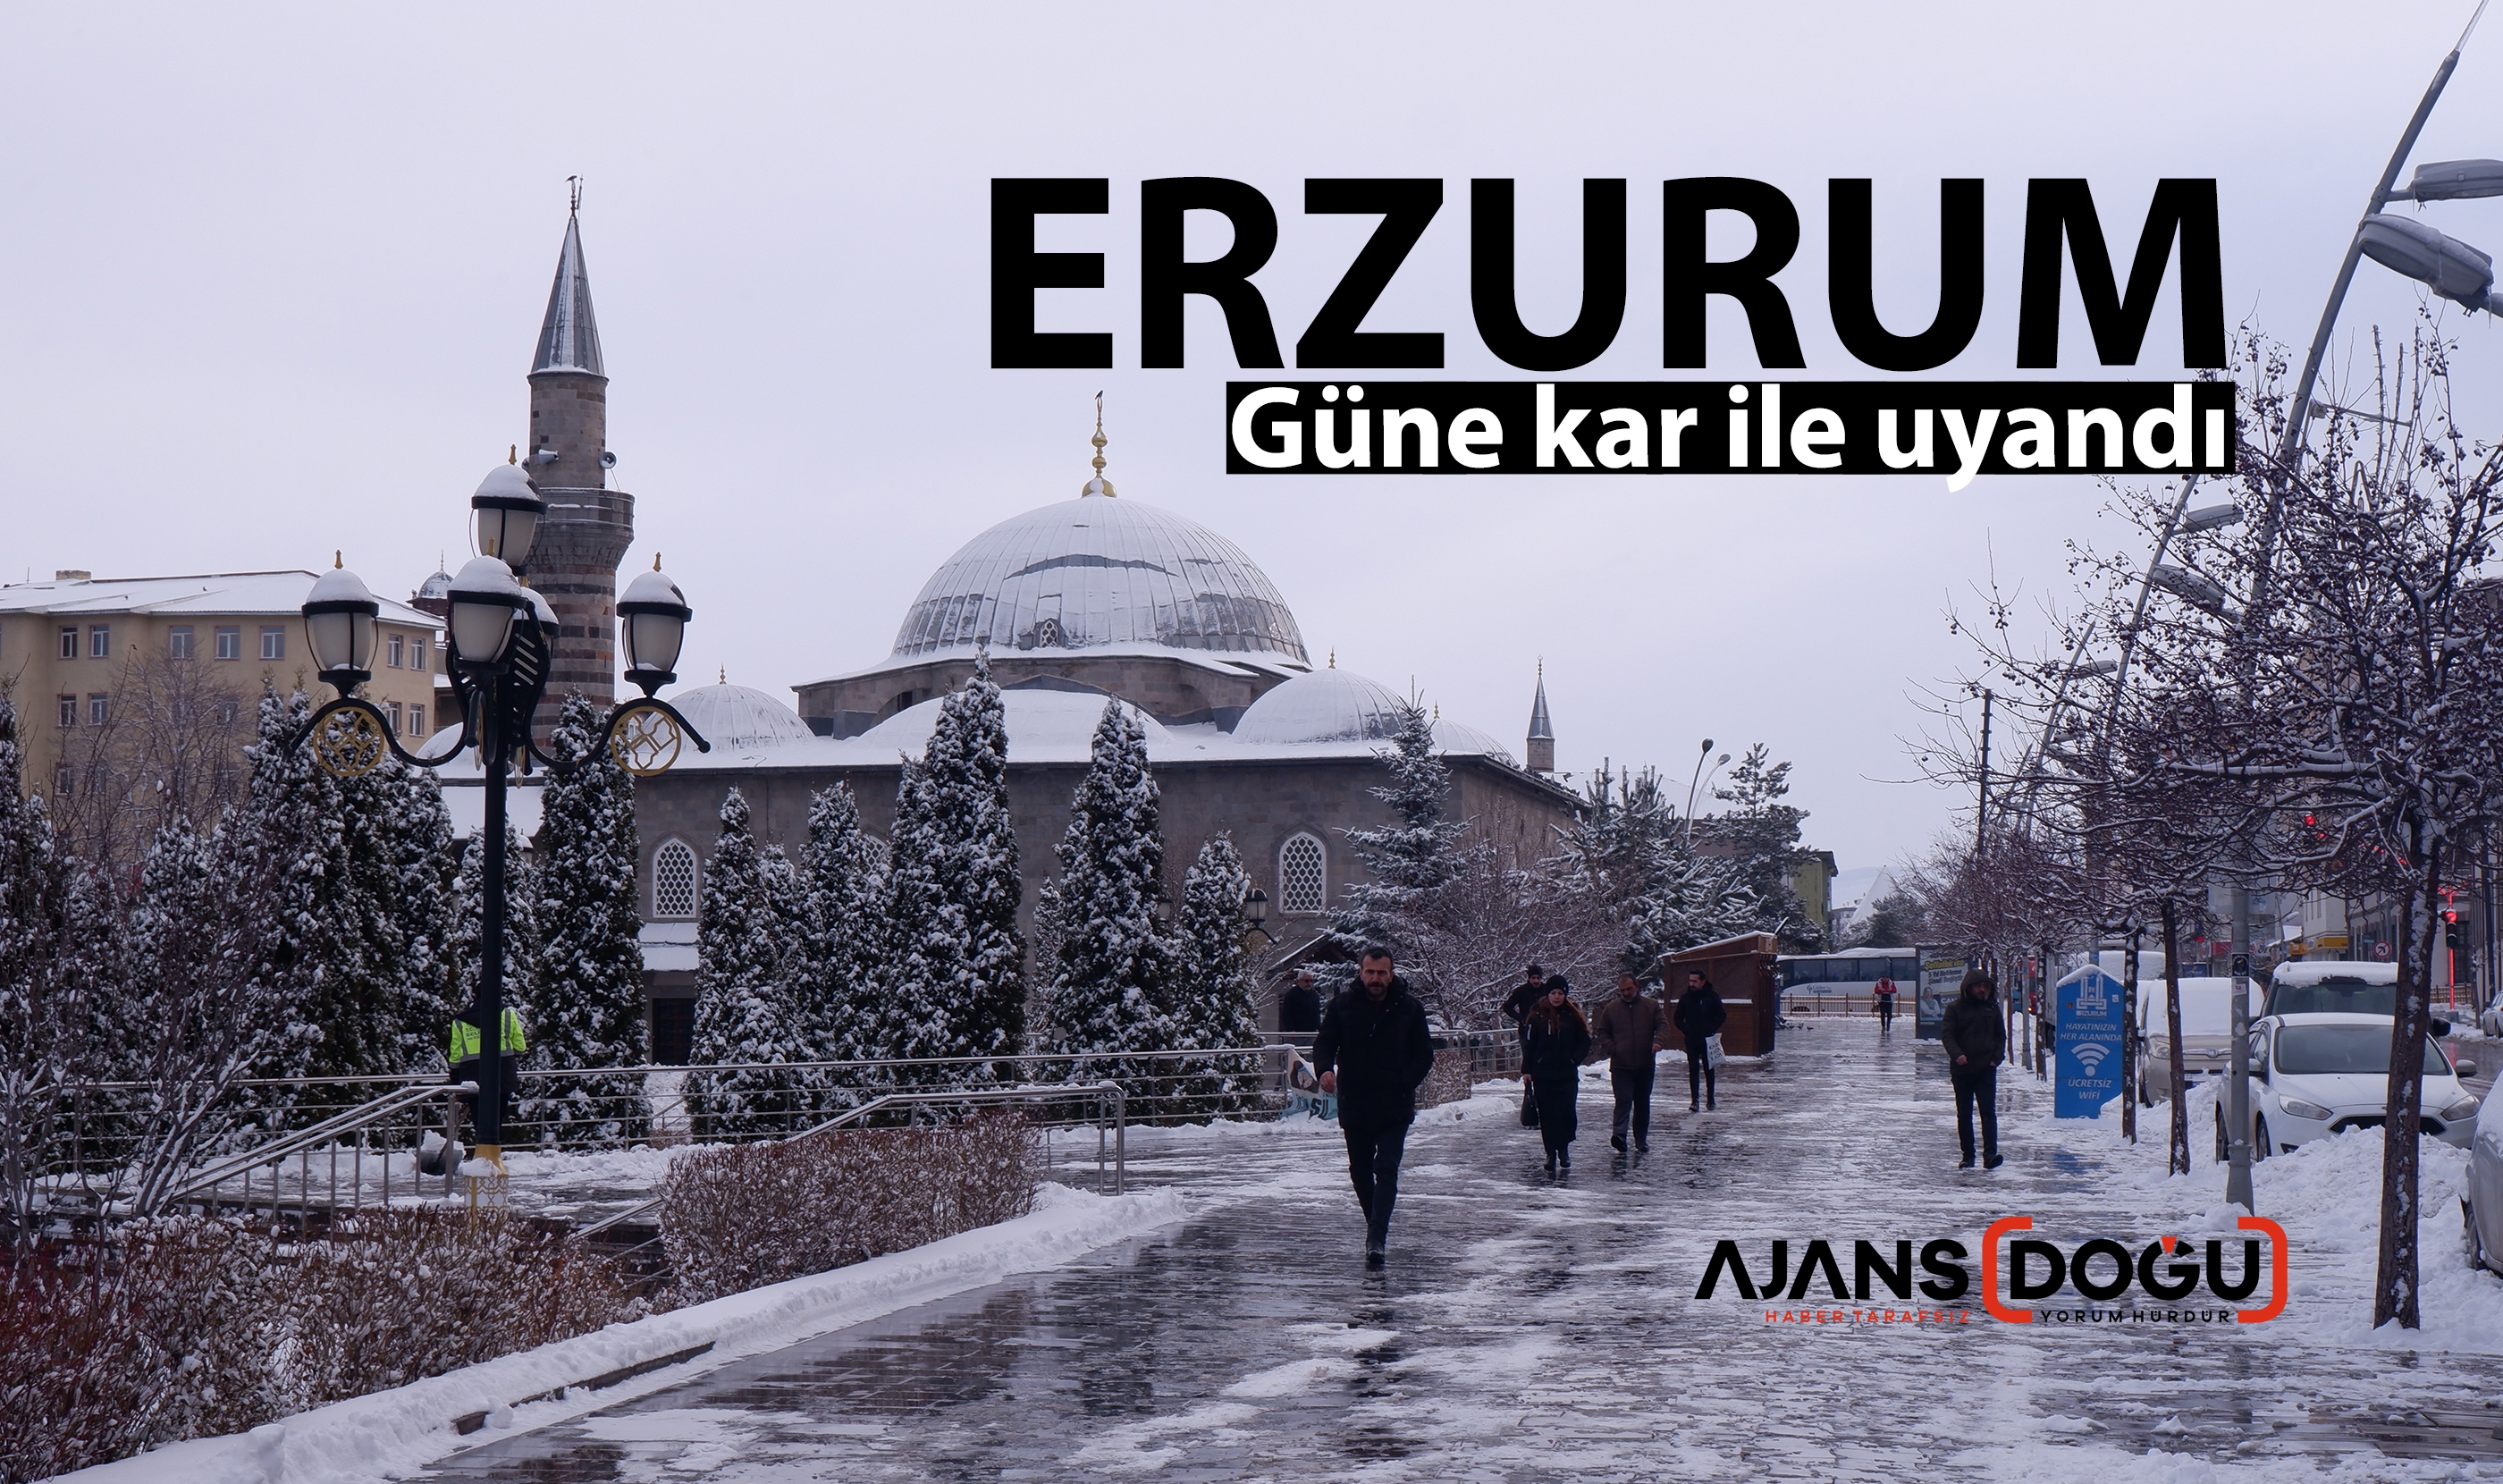 Erzurum güne kar yağışı ile uyandı